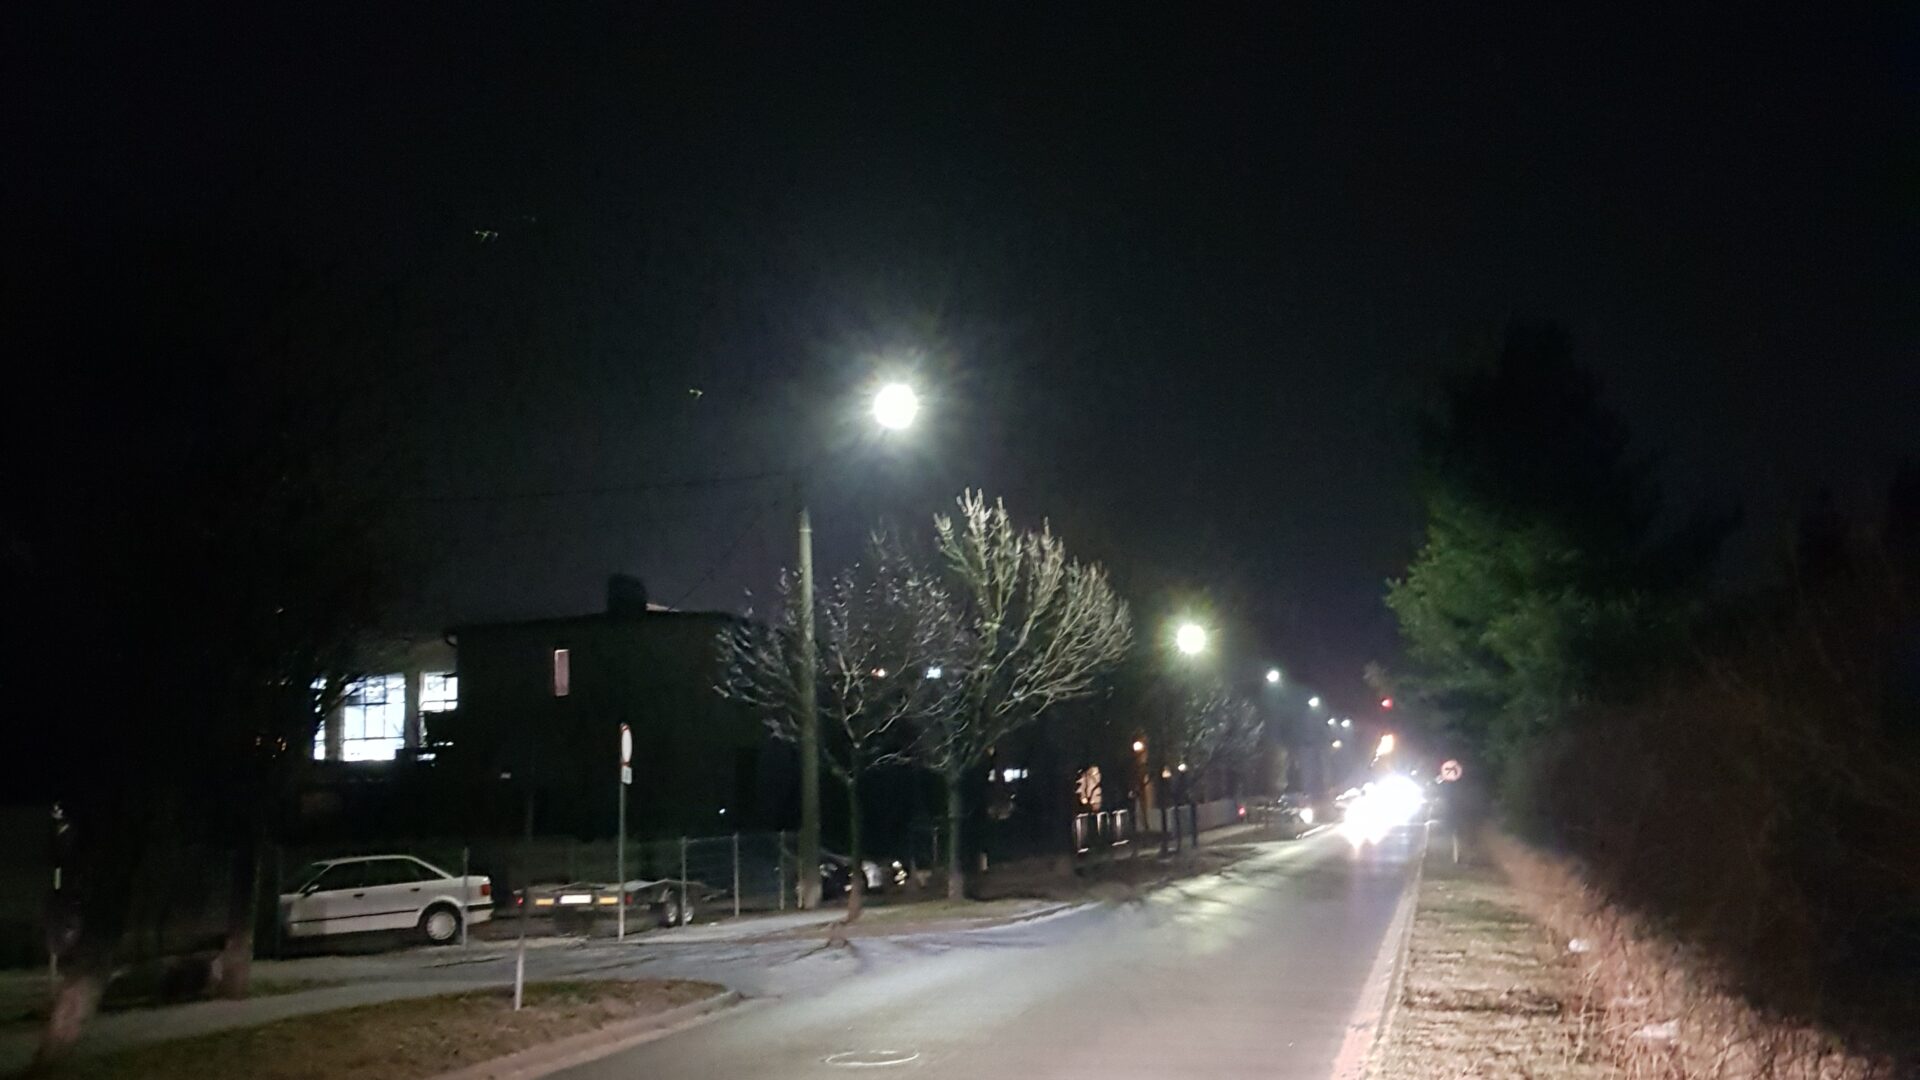 na zdjęciu widać nowe oświetlenie uliczne